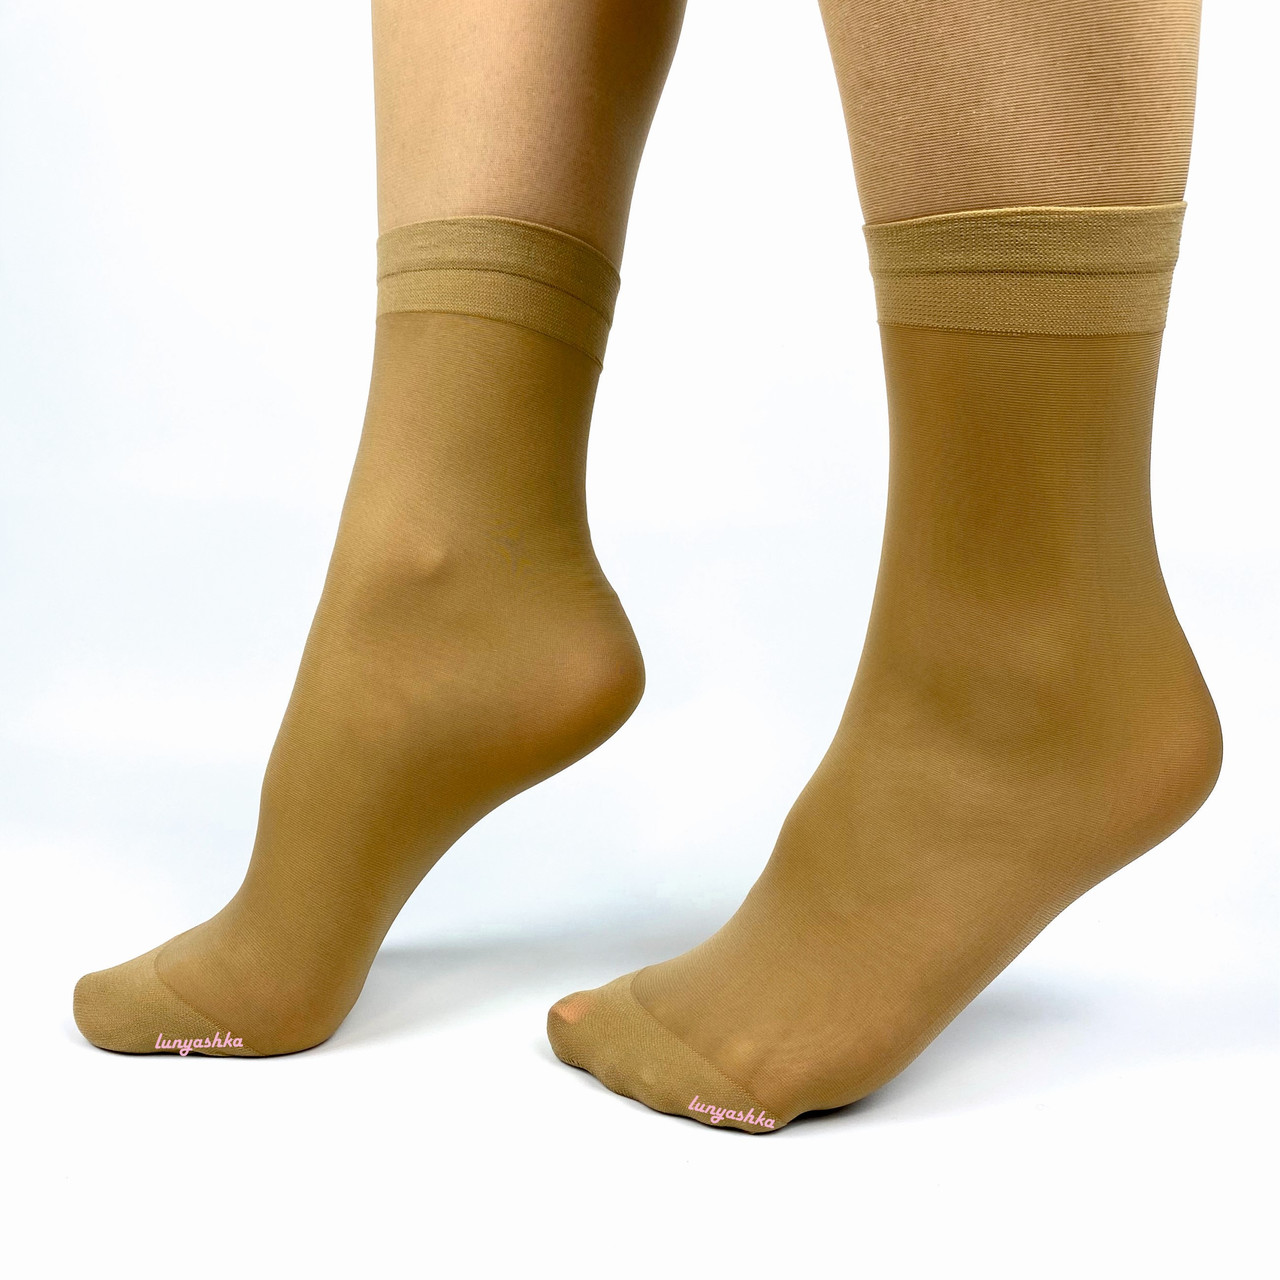 Щільні міцні капронові шкарпетки, 50 Den, бежевий і чорний колір, Джесі, 36-40